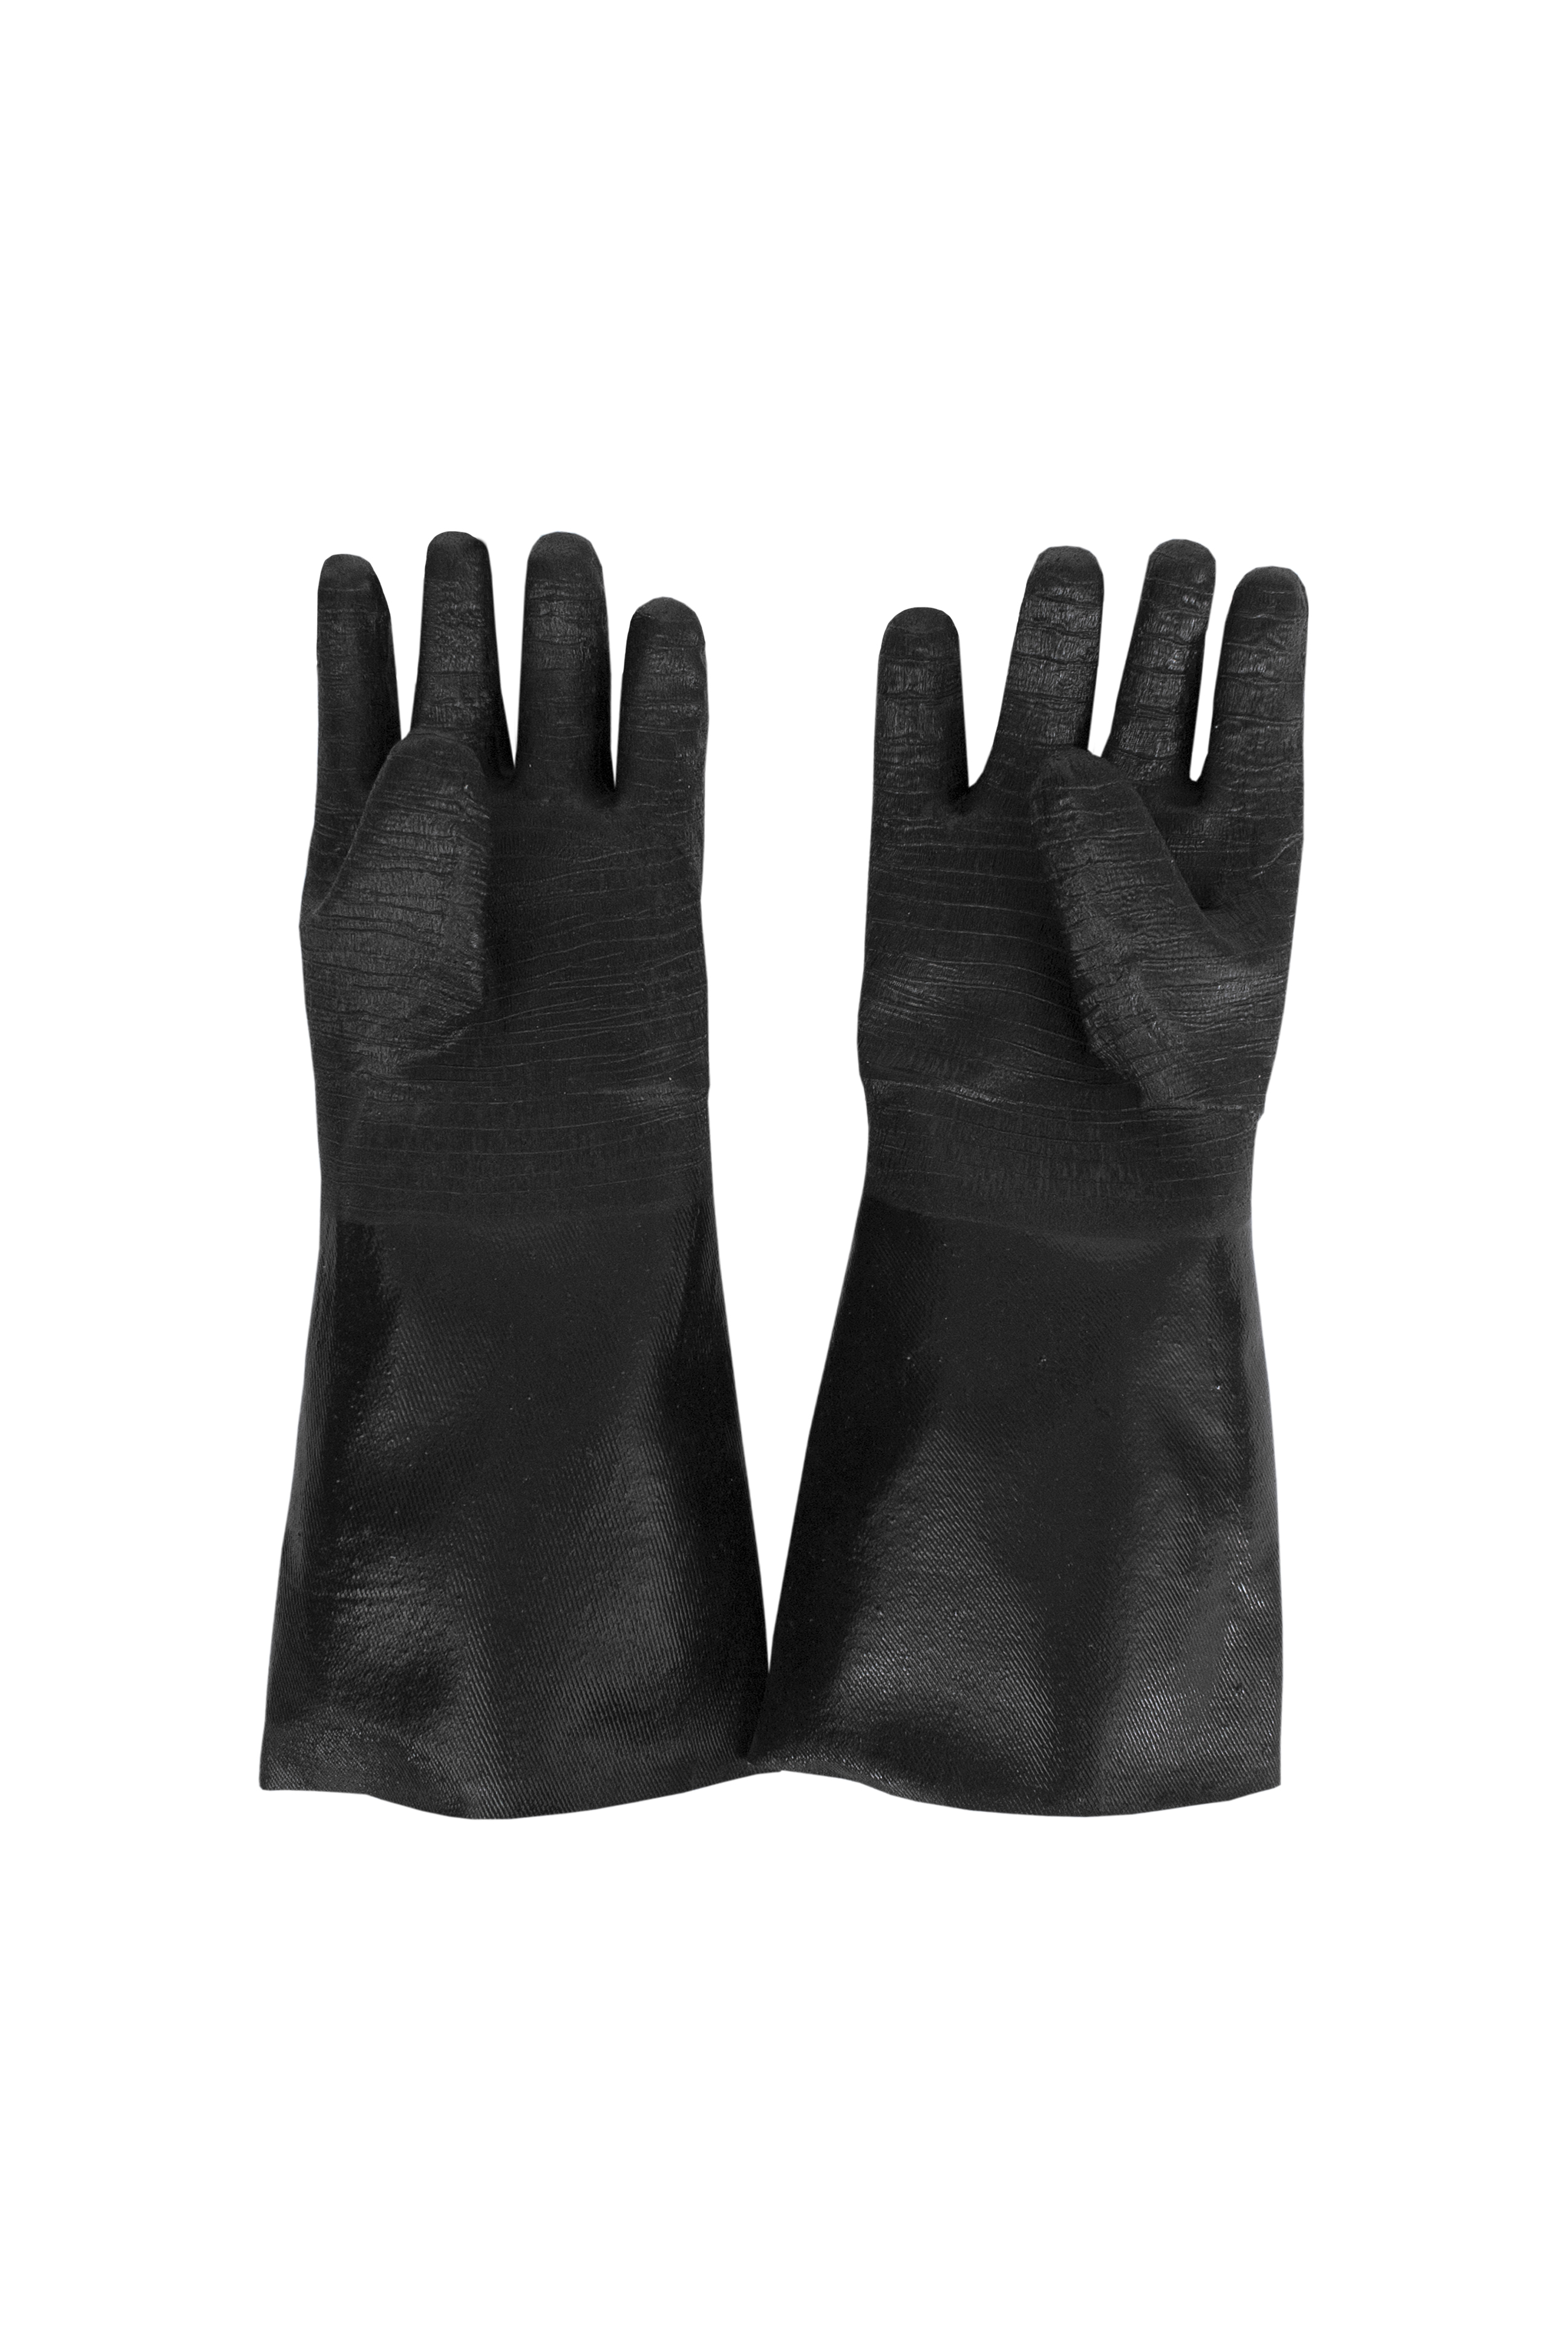 Neoprene Cleaning Gloves, 17"